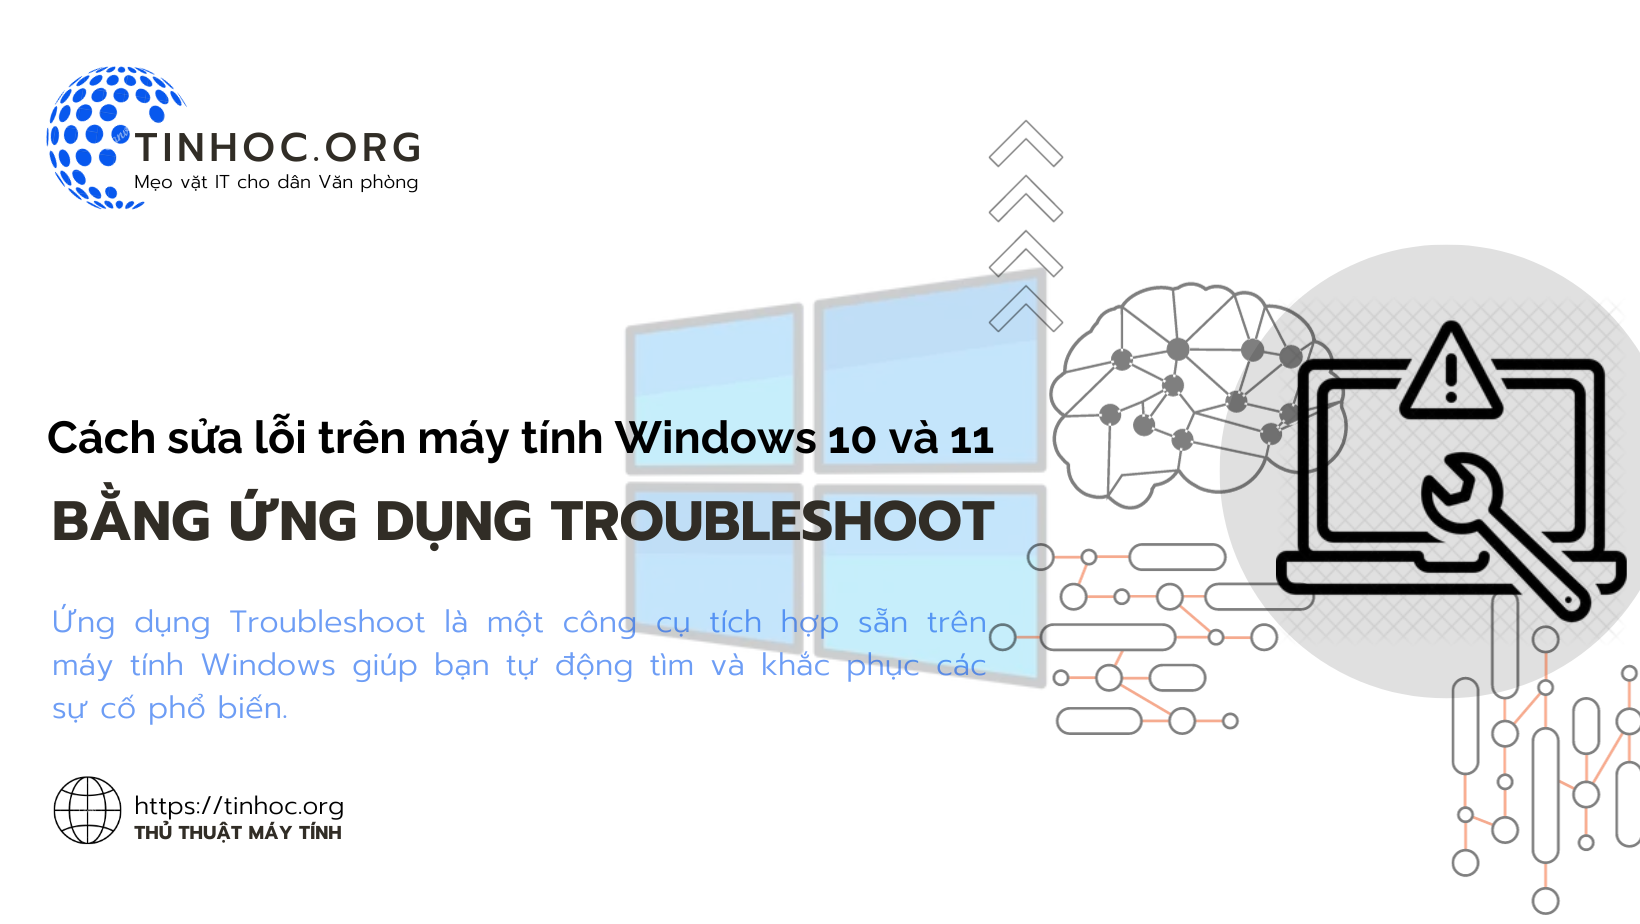 Ứng dụng Troubleshoot là một công cụ tích hợp sẵn trên máy tính Windows 10 và 11 giúp bạn tự động tìm và khắc phục các sự cố phổ biến.